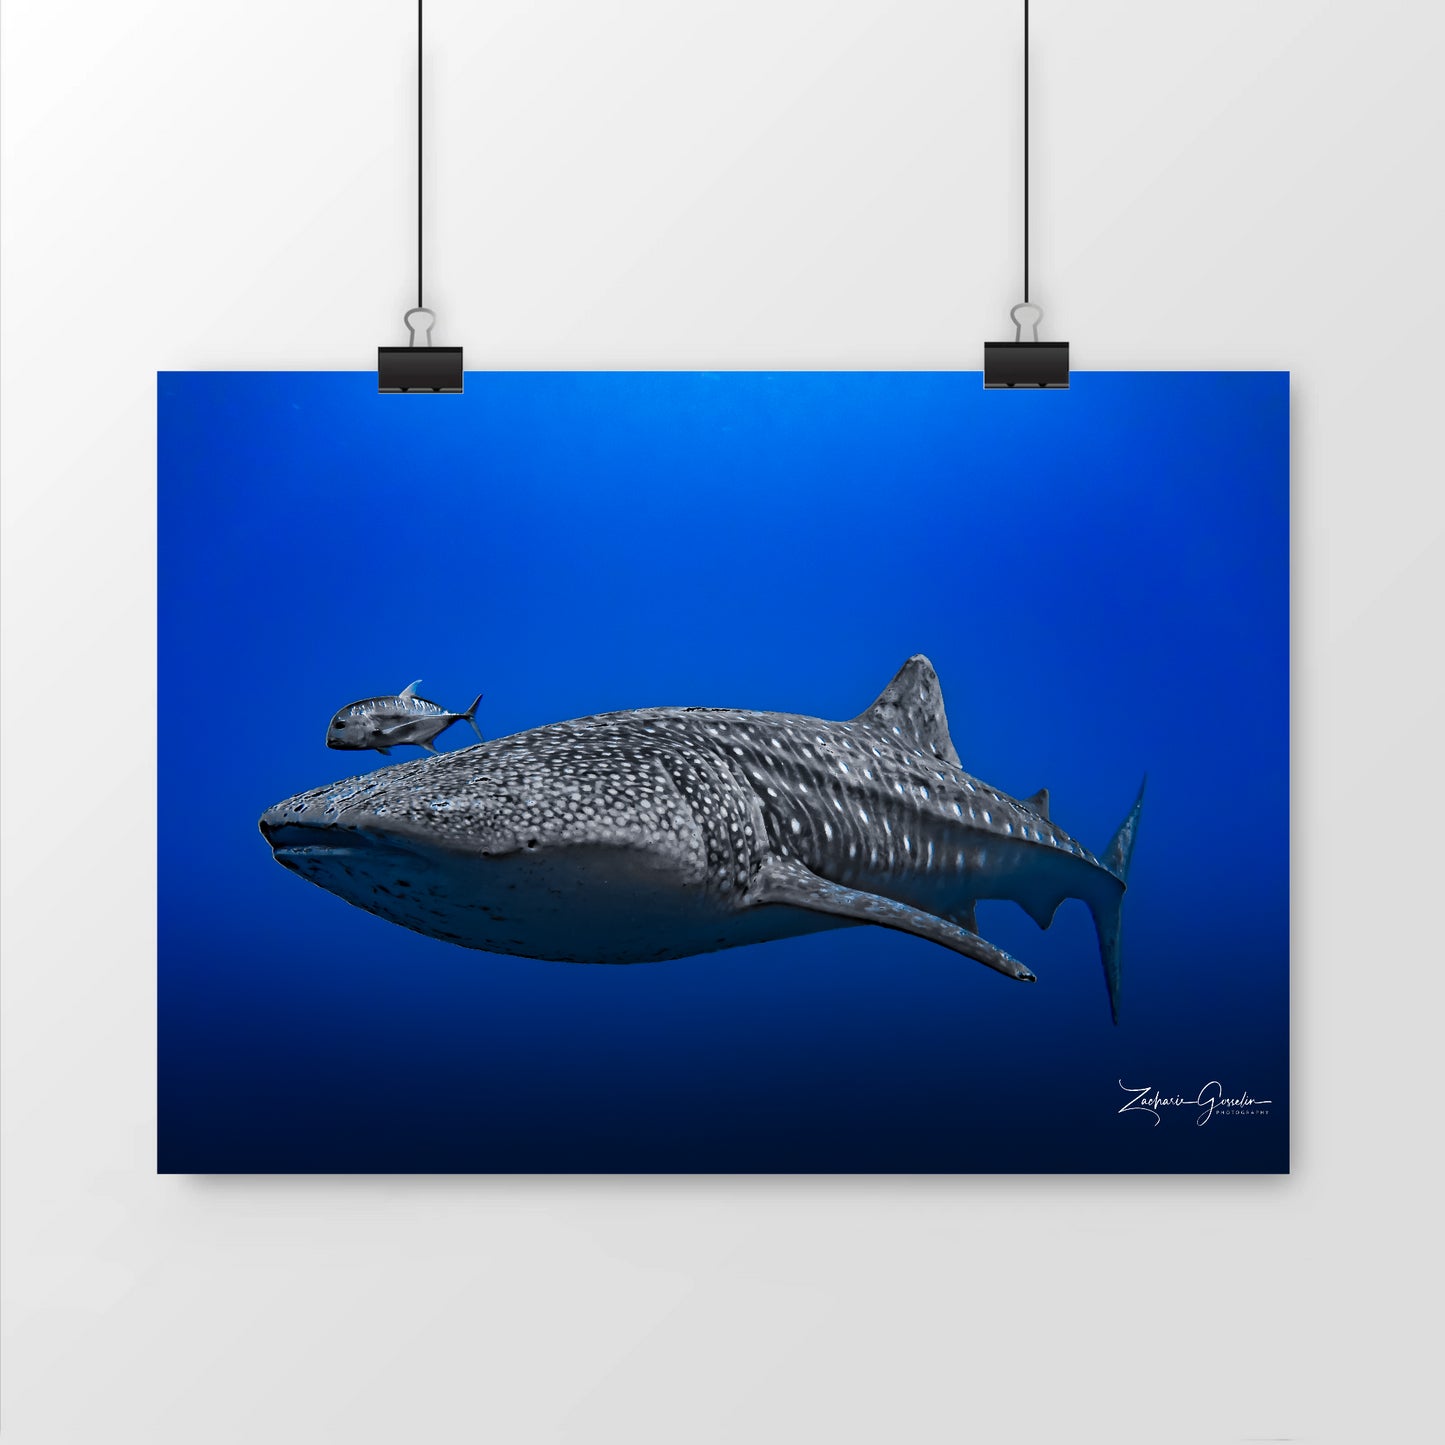 Photo de requin baleine dans le bleu de l'océan - mat